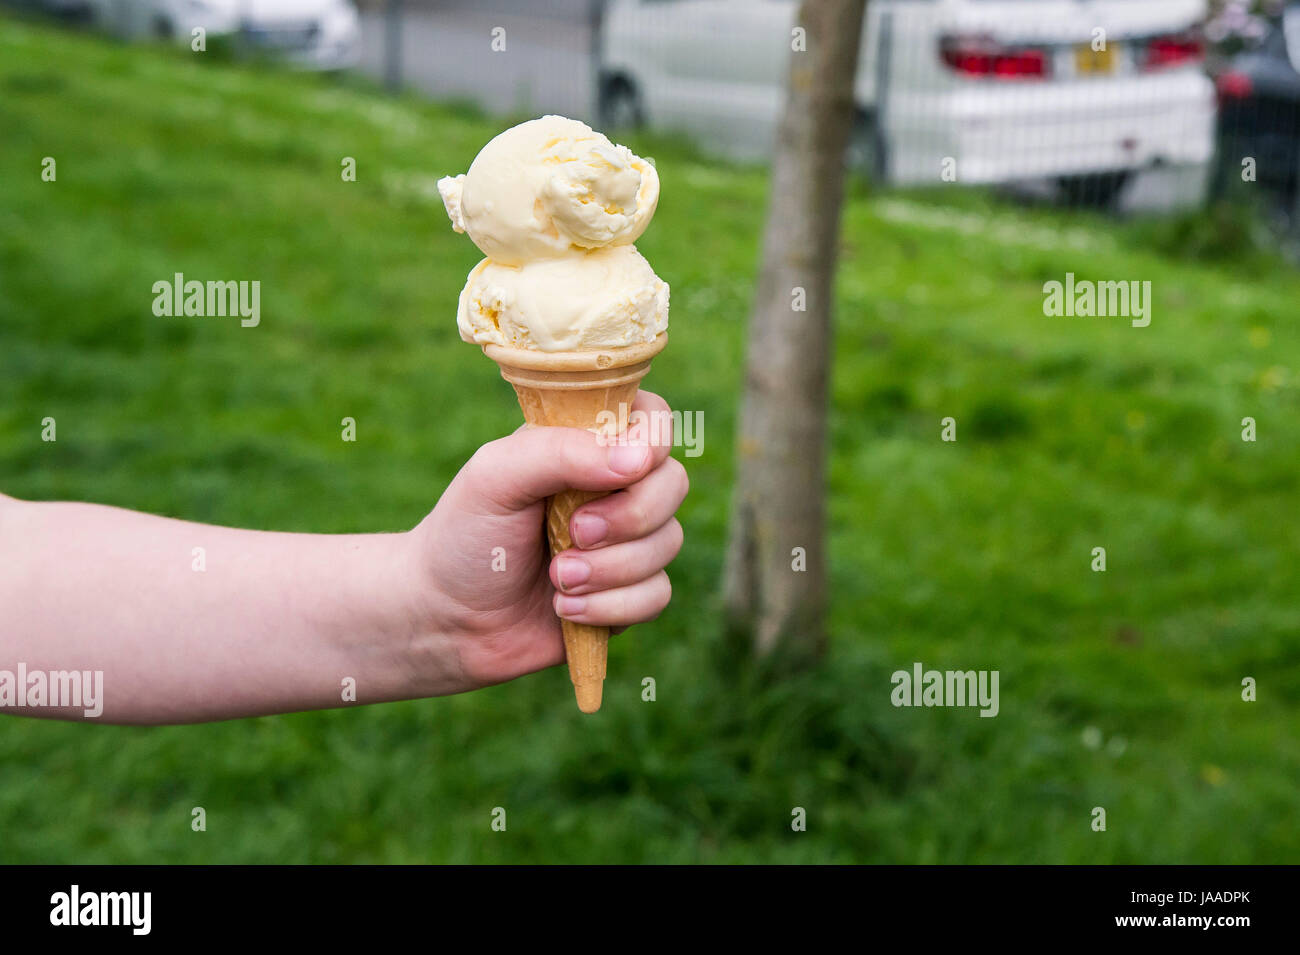 Un enfant tenant un cornet de crème glacée ; Main ; enfant ; traiter ; glace vanille, de crème glacée ; Cornet ; chambre double écope ; jolie ; Buvette ; Banque D'Images